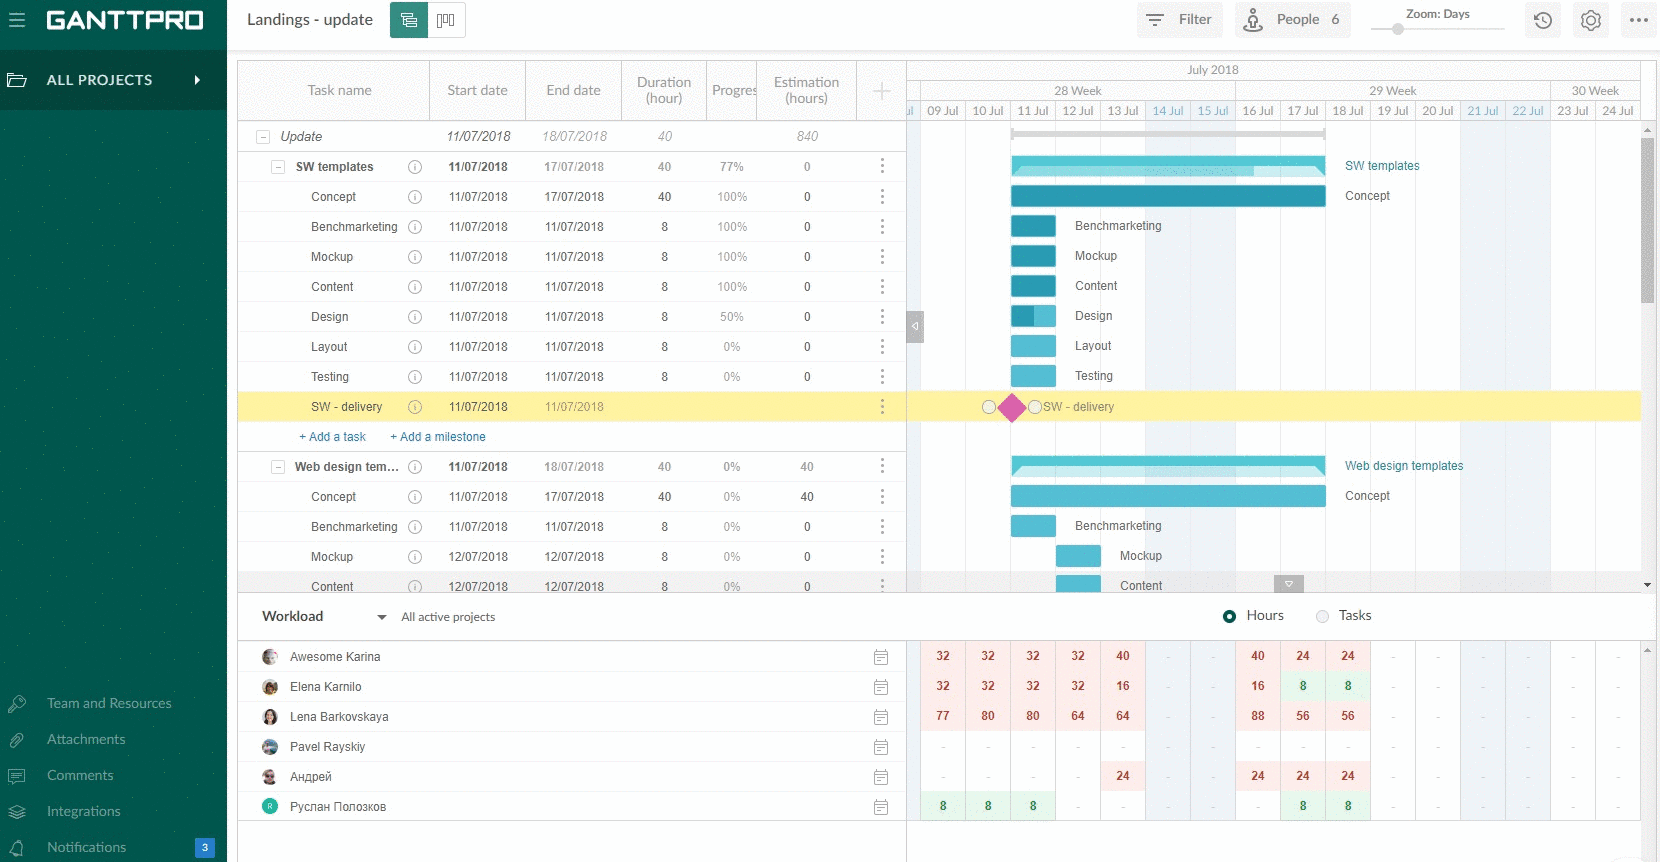 Workload in GanttPRO online Gantt chart software